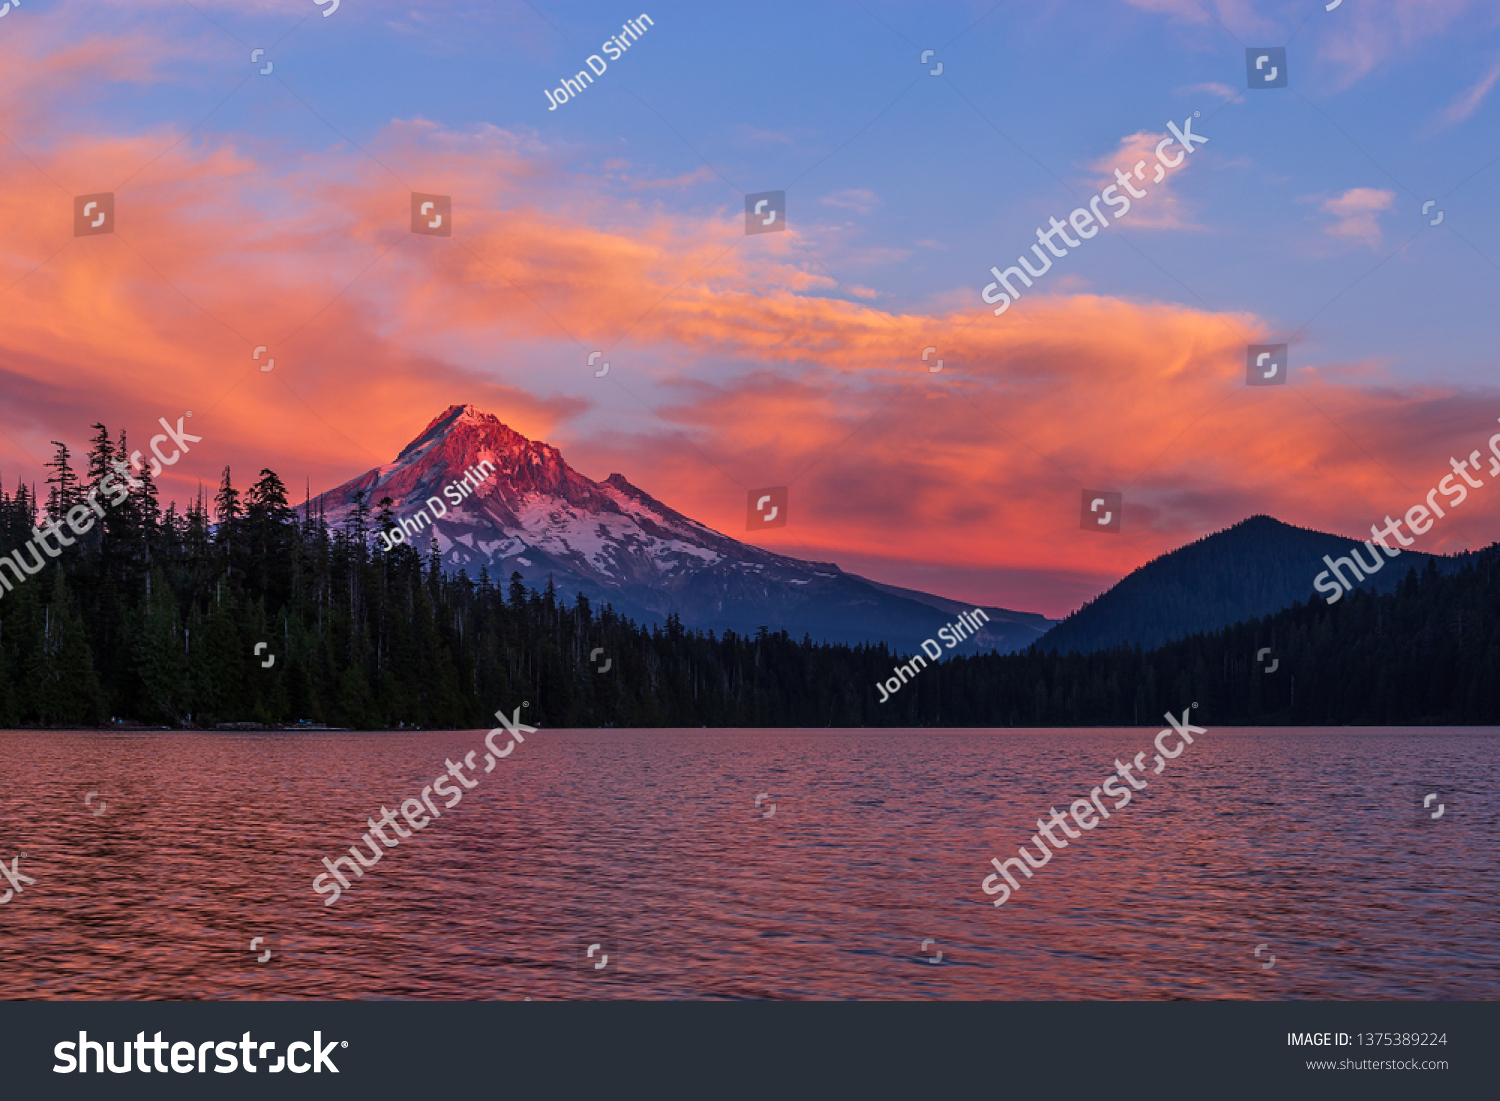 Sunset Alpenglow On Mt Hood Oregon Stock Photo 1375389224 Shutterstock